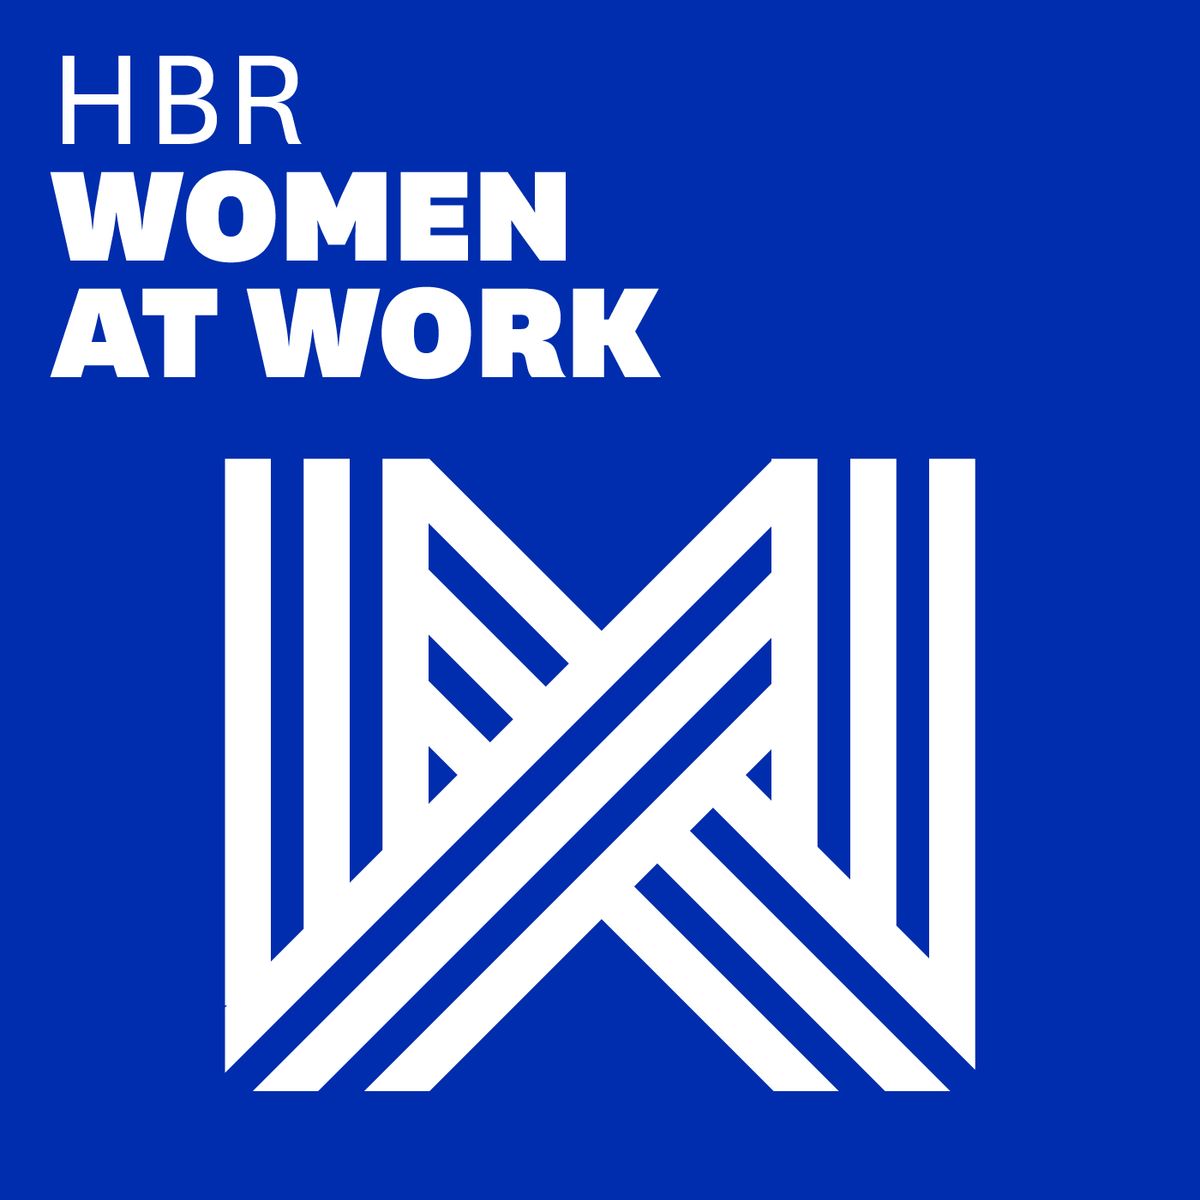 HBR Women at Work